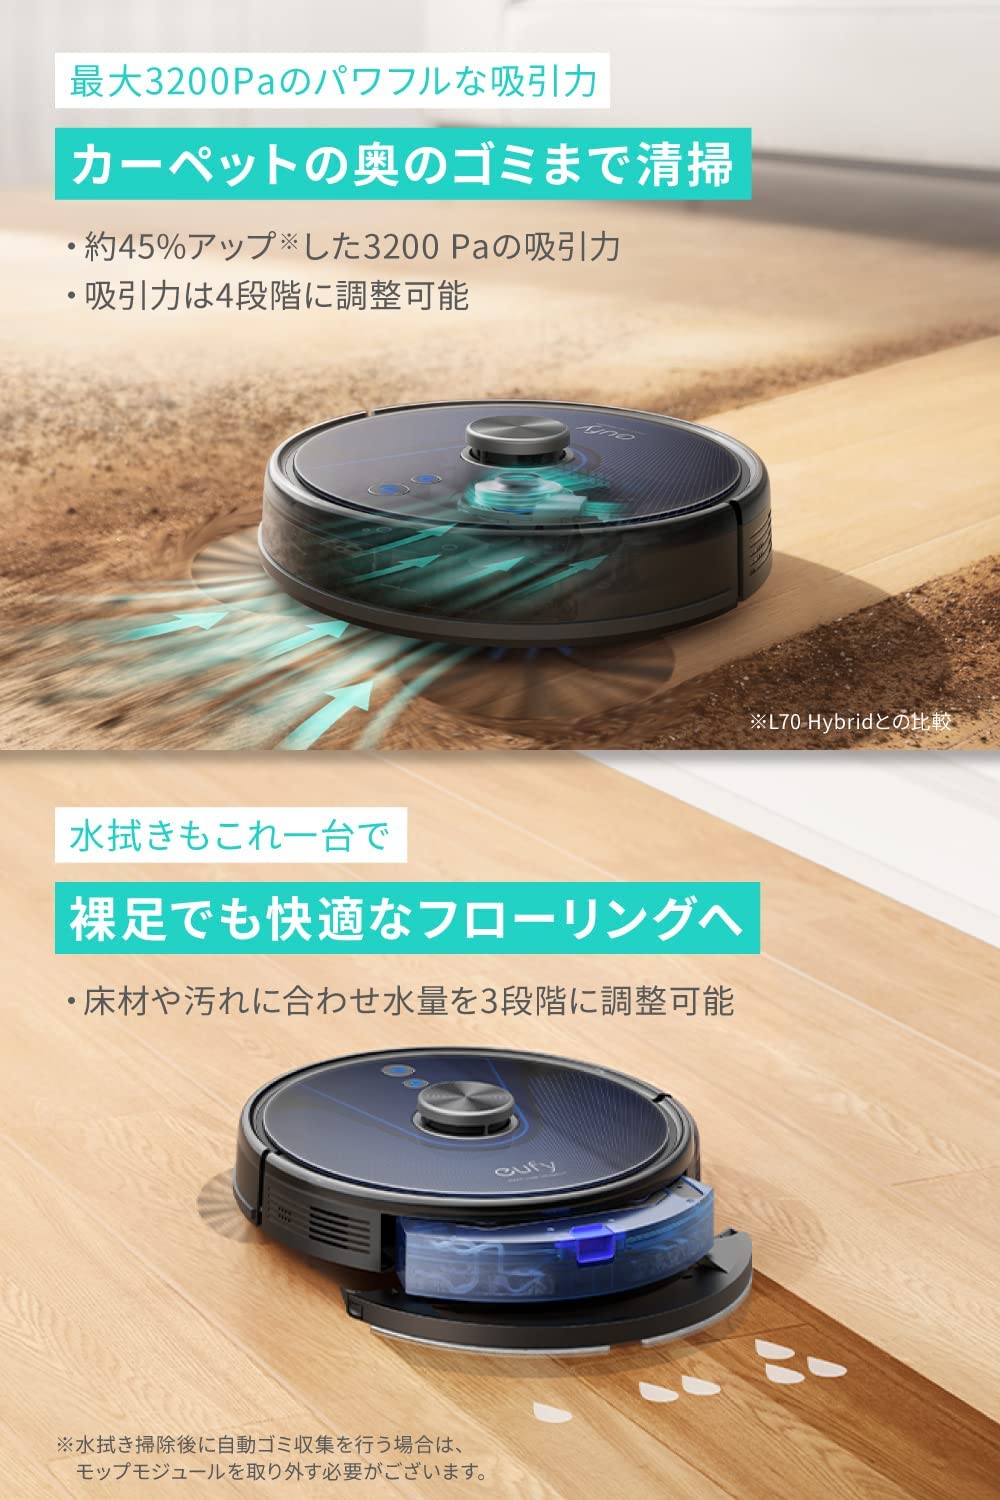 ロボット掃除機 BoostIQ搭載 アプリ対応 強力吸引 静音設計 超薄型